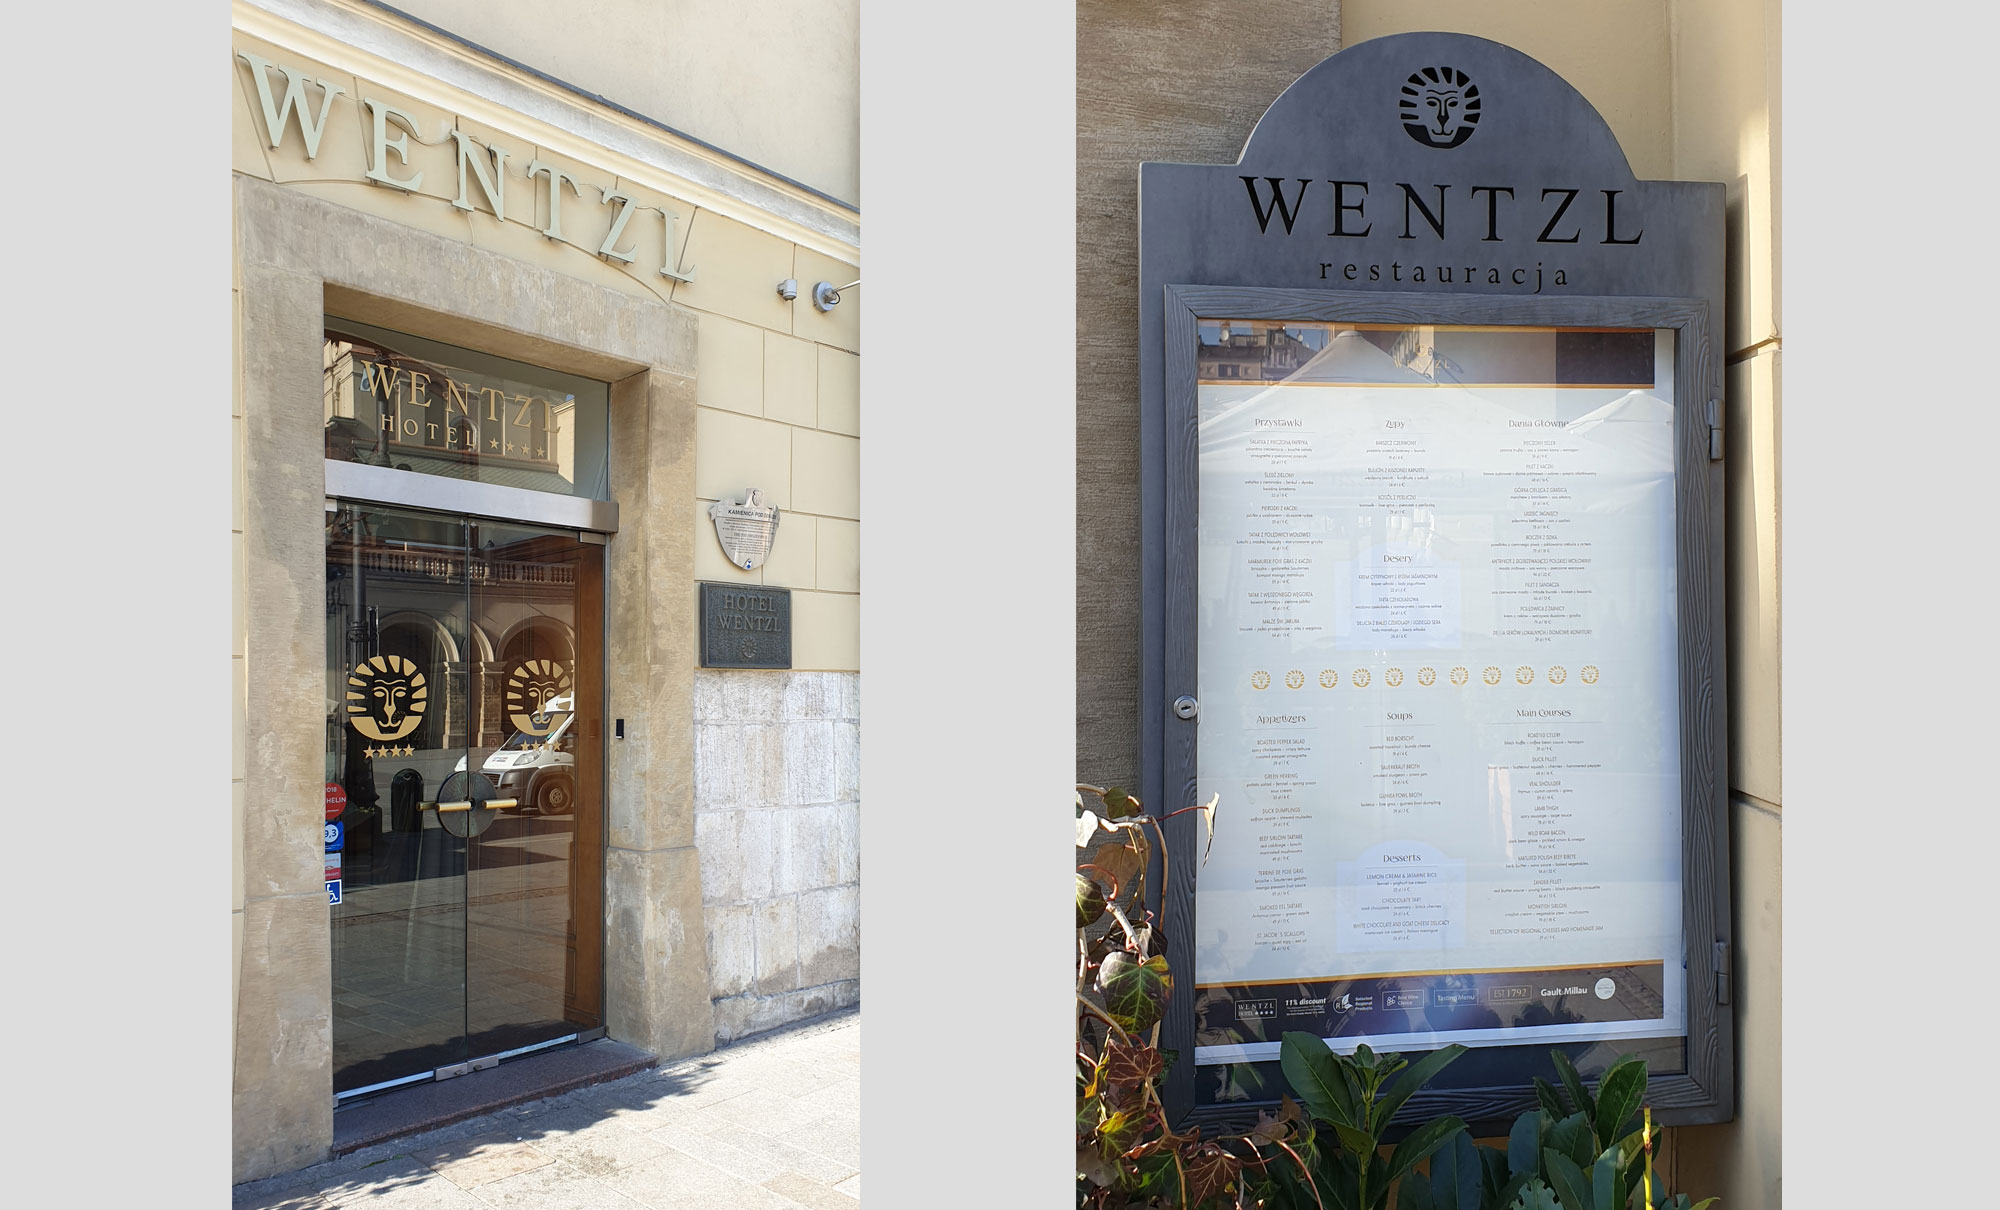 Wentzl hotel i restauracja wejscie